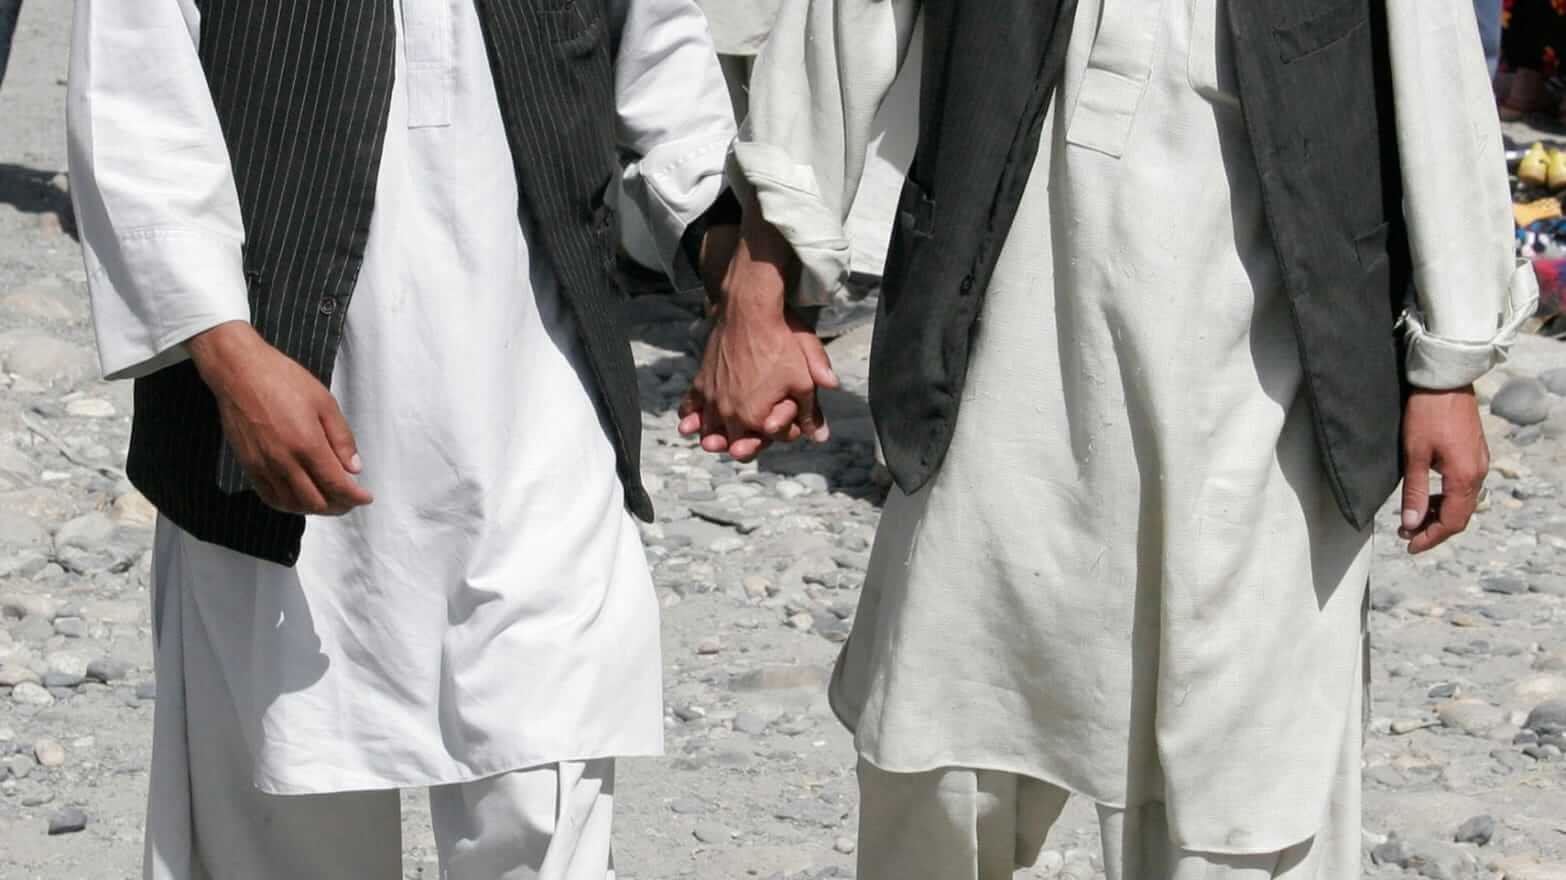 I 10 omotransfobici internazionali del 2021 - 160711 luongo afghanistan gay tease chdlwn - Gay.it